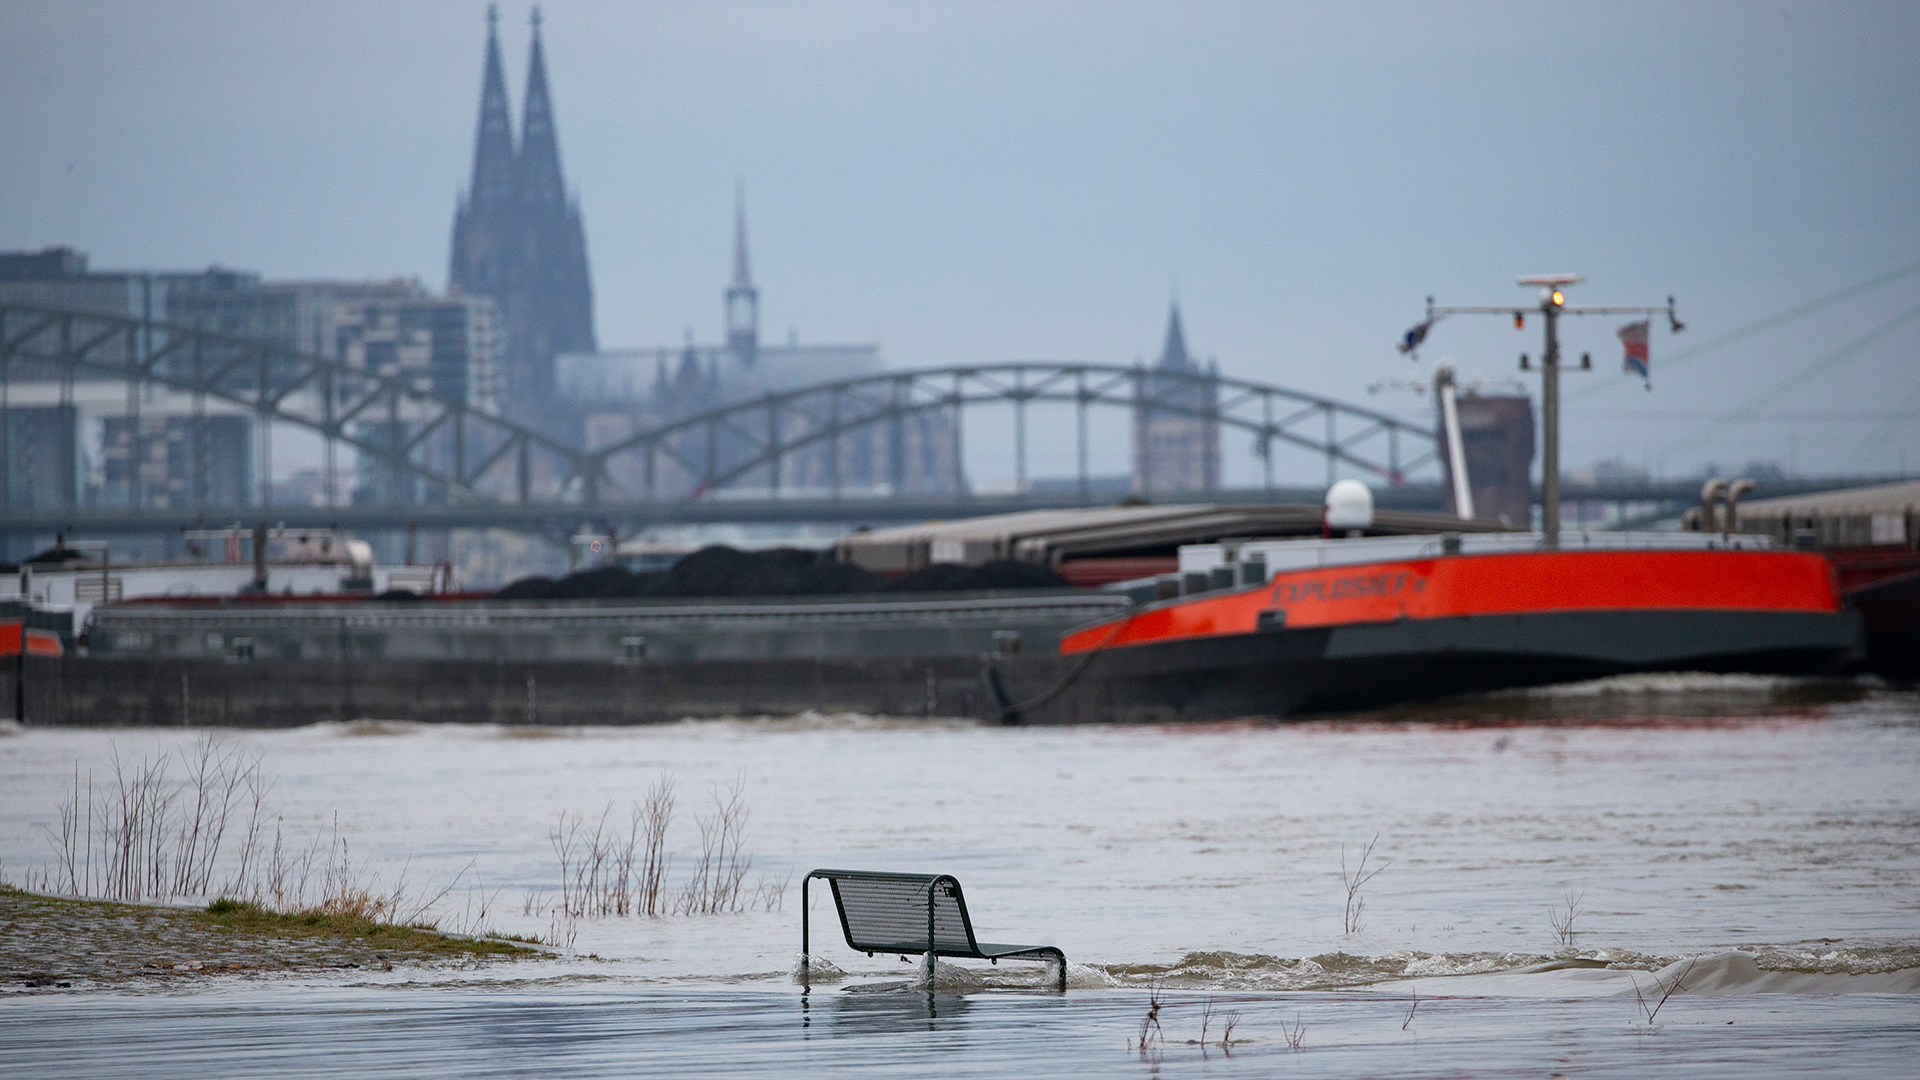 Binnenschiffe fahren auf dem Rhein vor der Kulisse des Kölner Doms. Im Vordergrund steht eine vom Wasser umspülte Sitzbank. | dpa